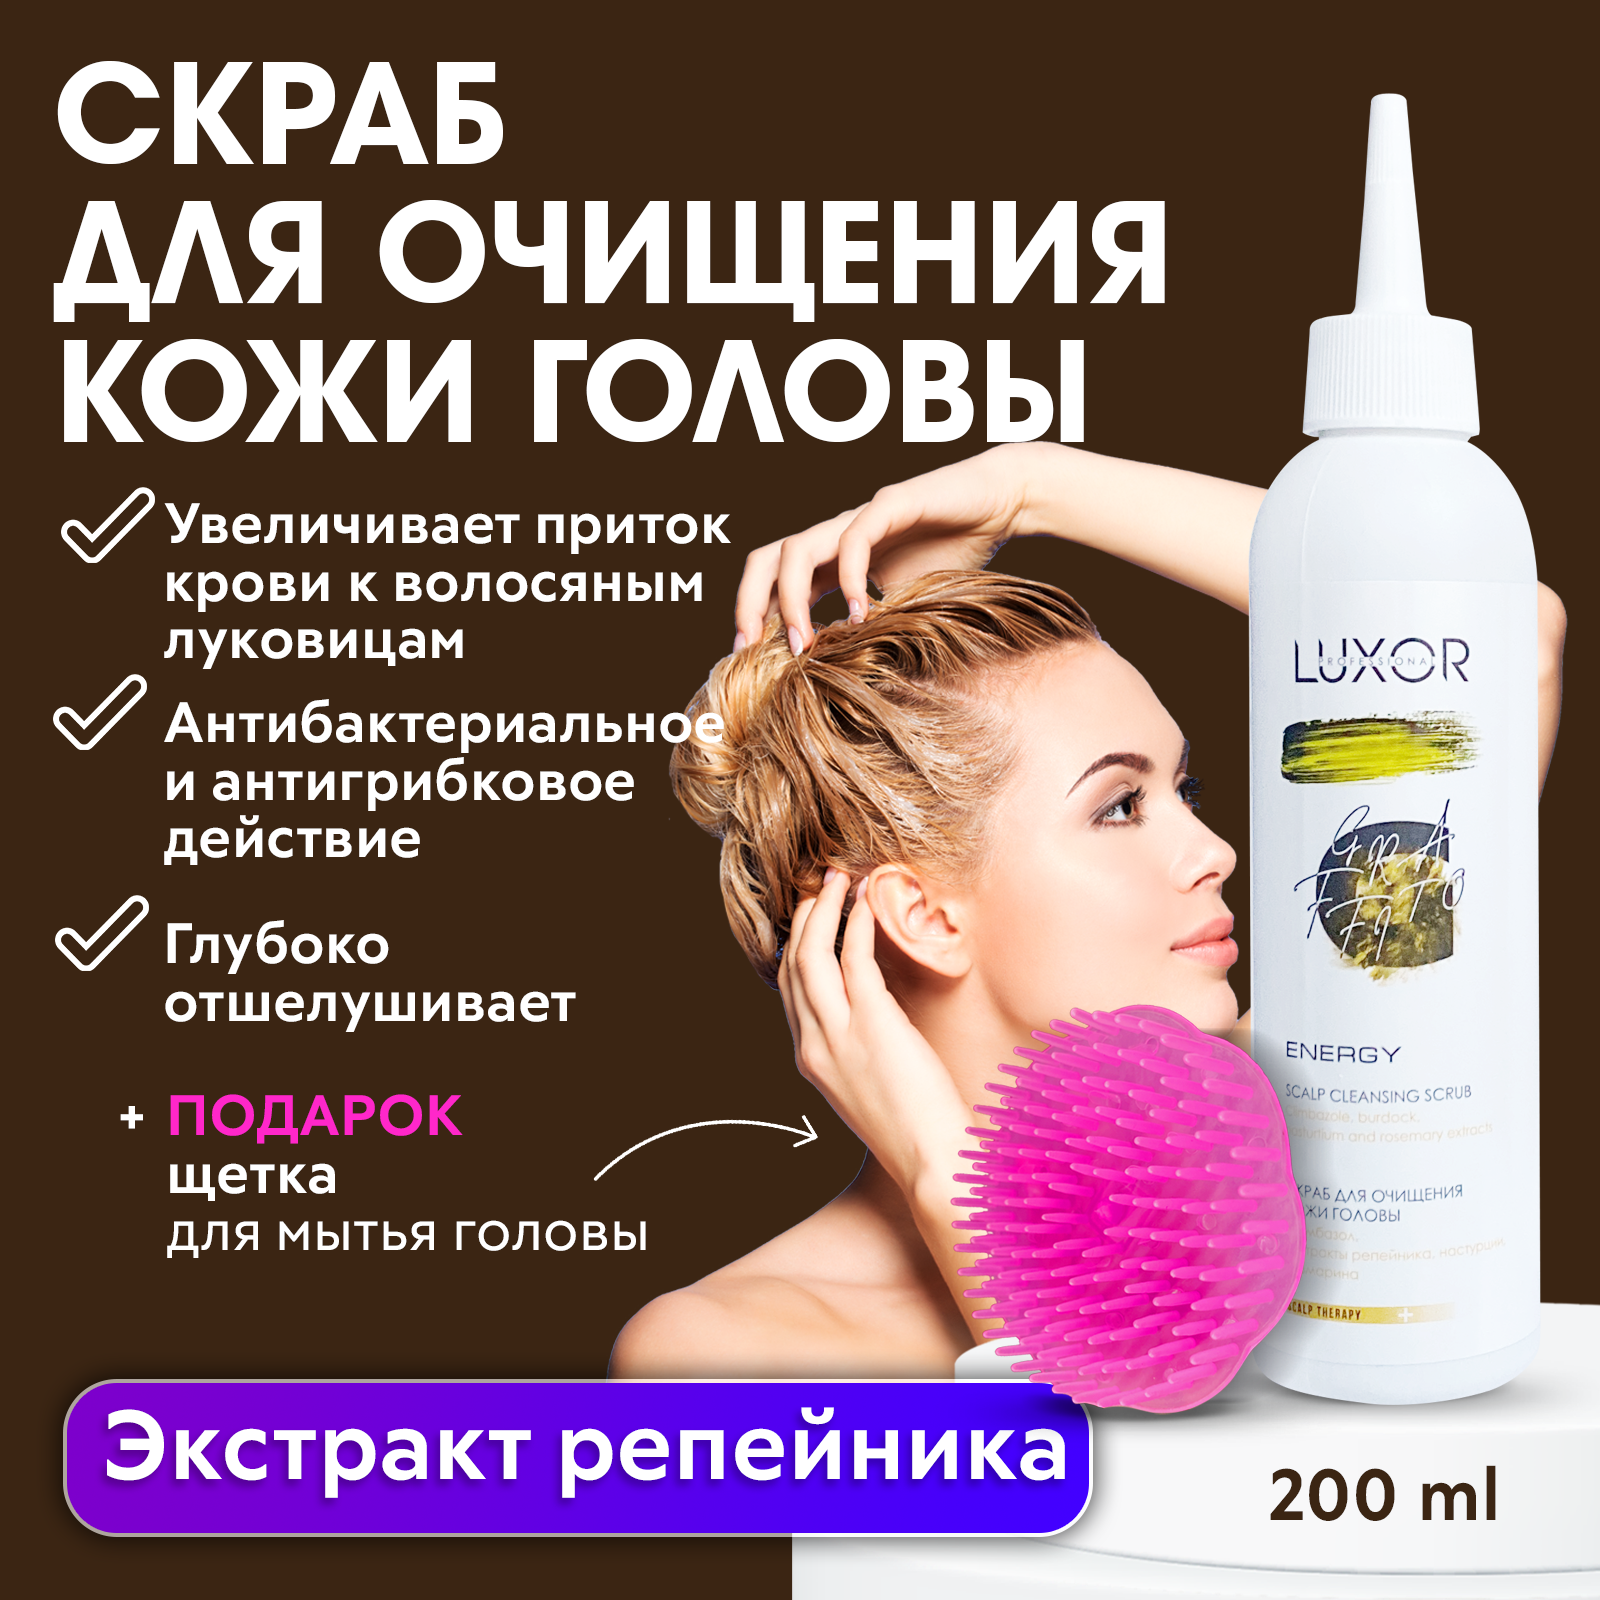 LUXOR PROFESSIONAL / Скраб пилинг для очищения кожи головы, отшелушивающий Scalp cleansing scrub 200 мл + В подарок: Щетка для мытья головы(277D)